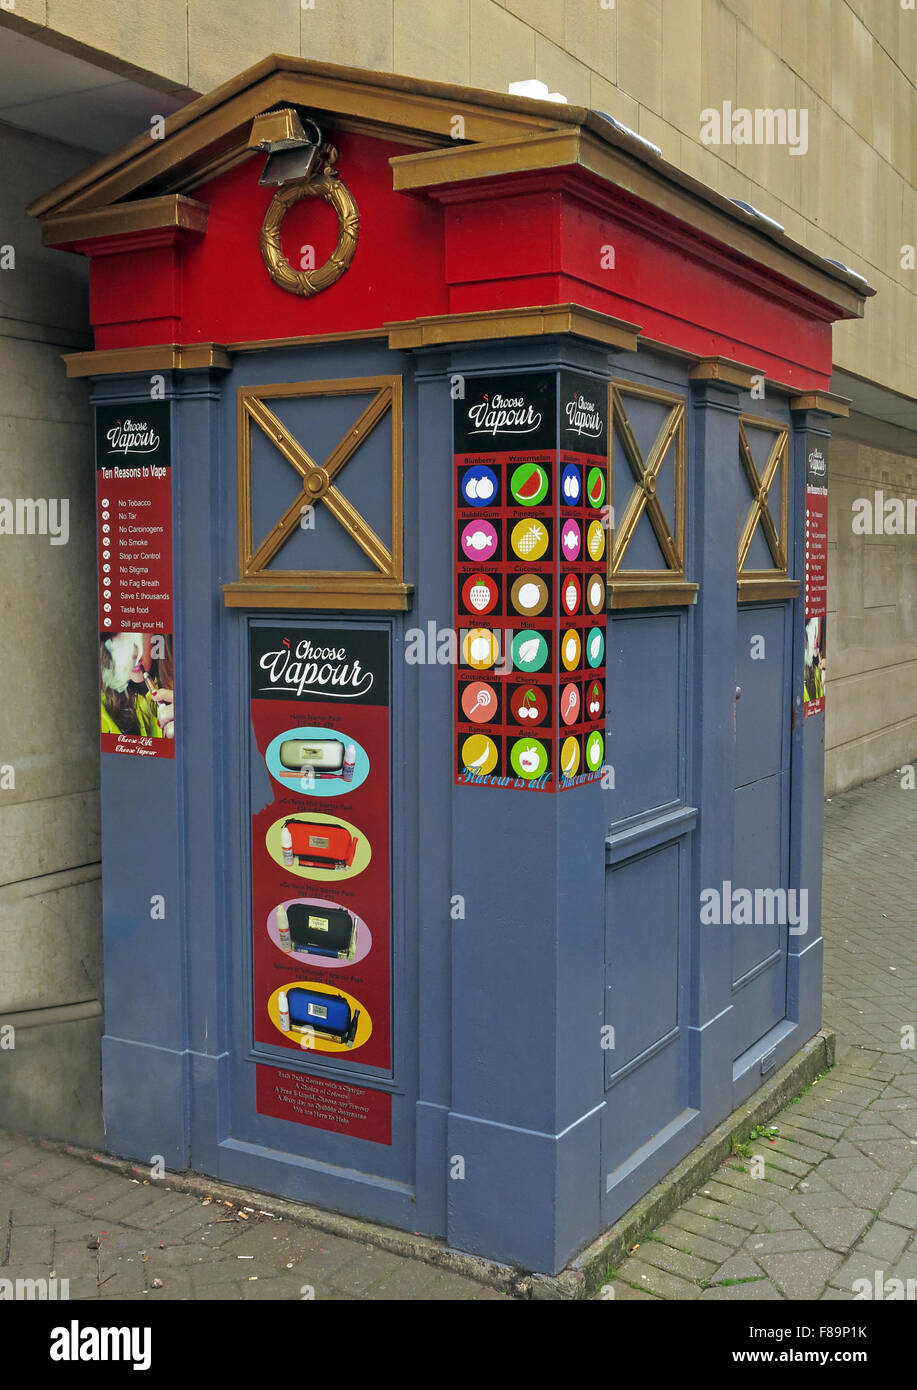 Un policebox maintenant Édimbourg Vaping shop,Edinburgh, Ecosse, Royaume-Uni Banque D'Images